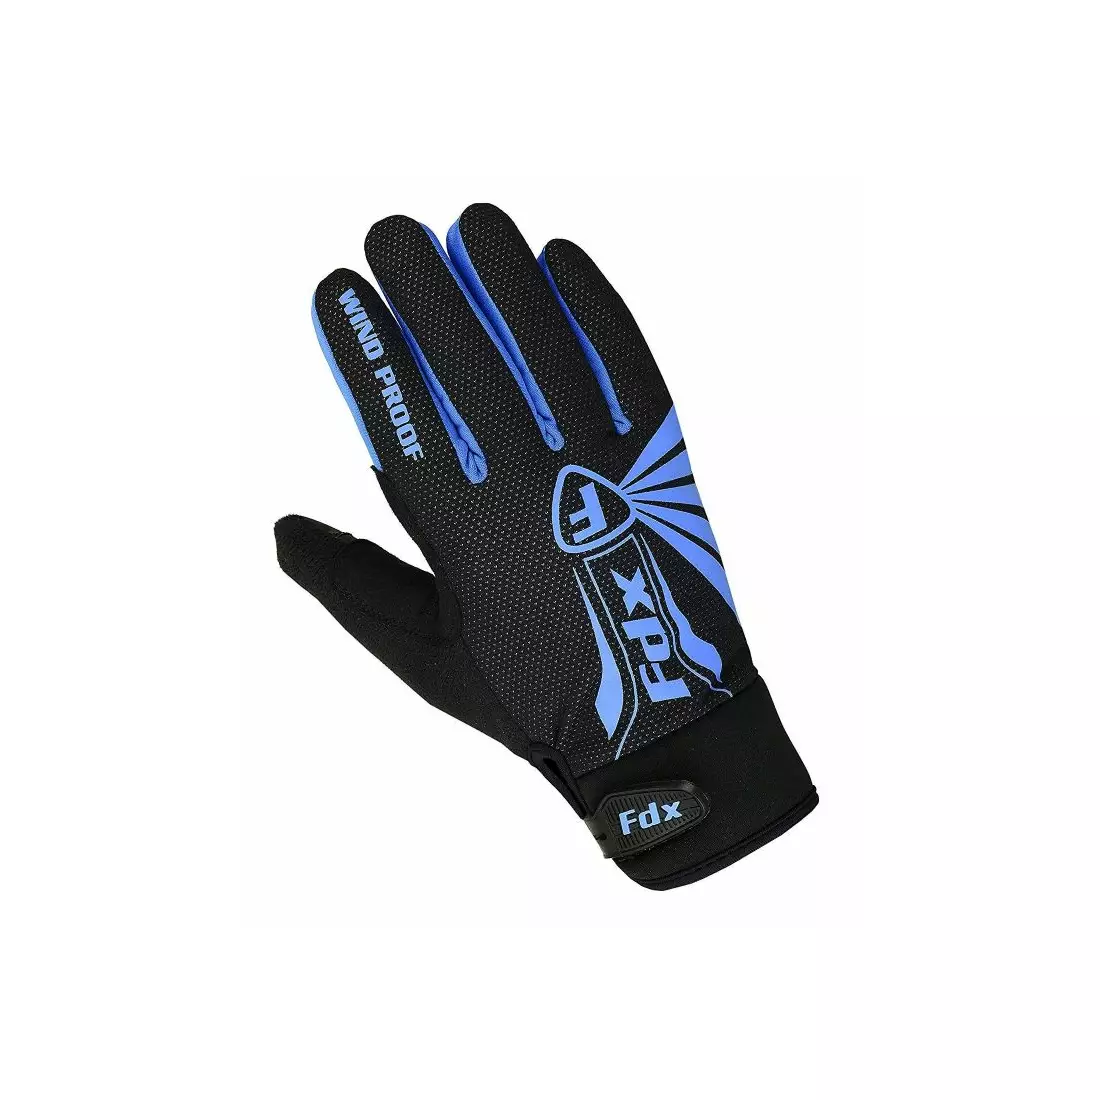 FDX 1901 Full Finger zimné cyklistické rukavice, čierne a modré